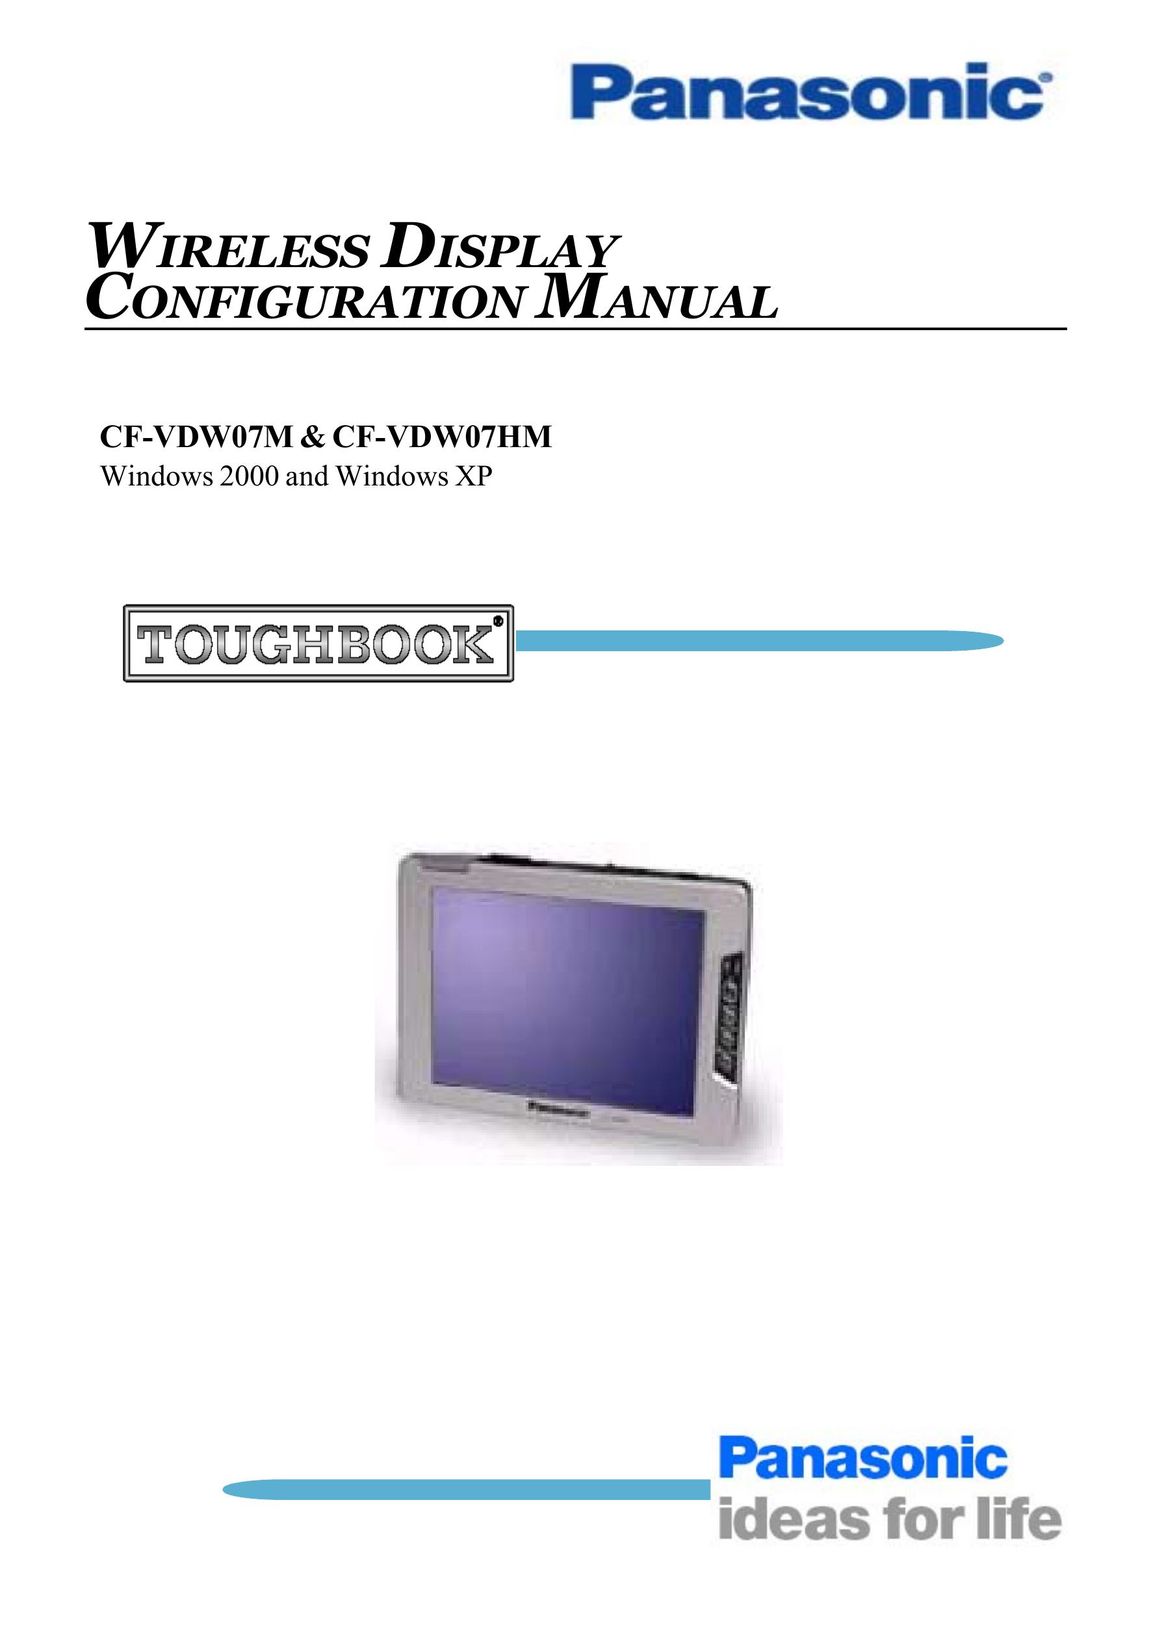 Panasonic CF-VDW07HM eBook Reader User Manual